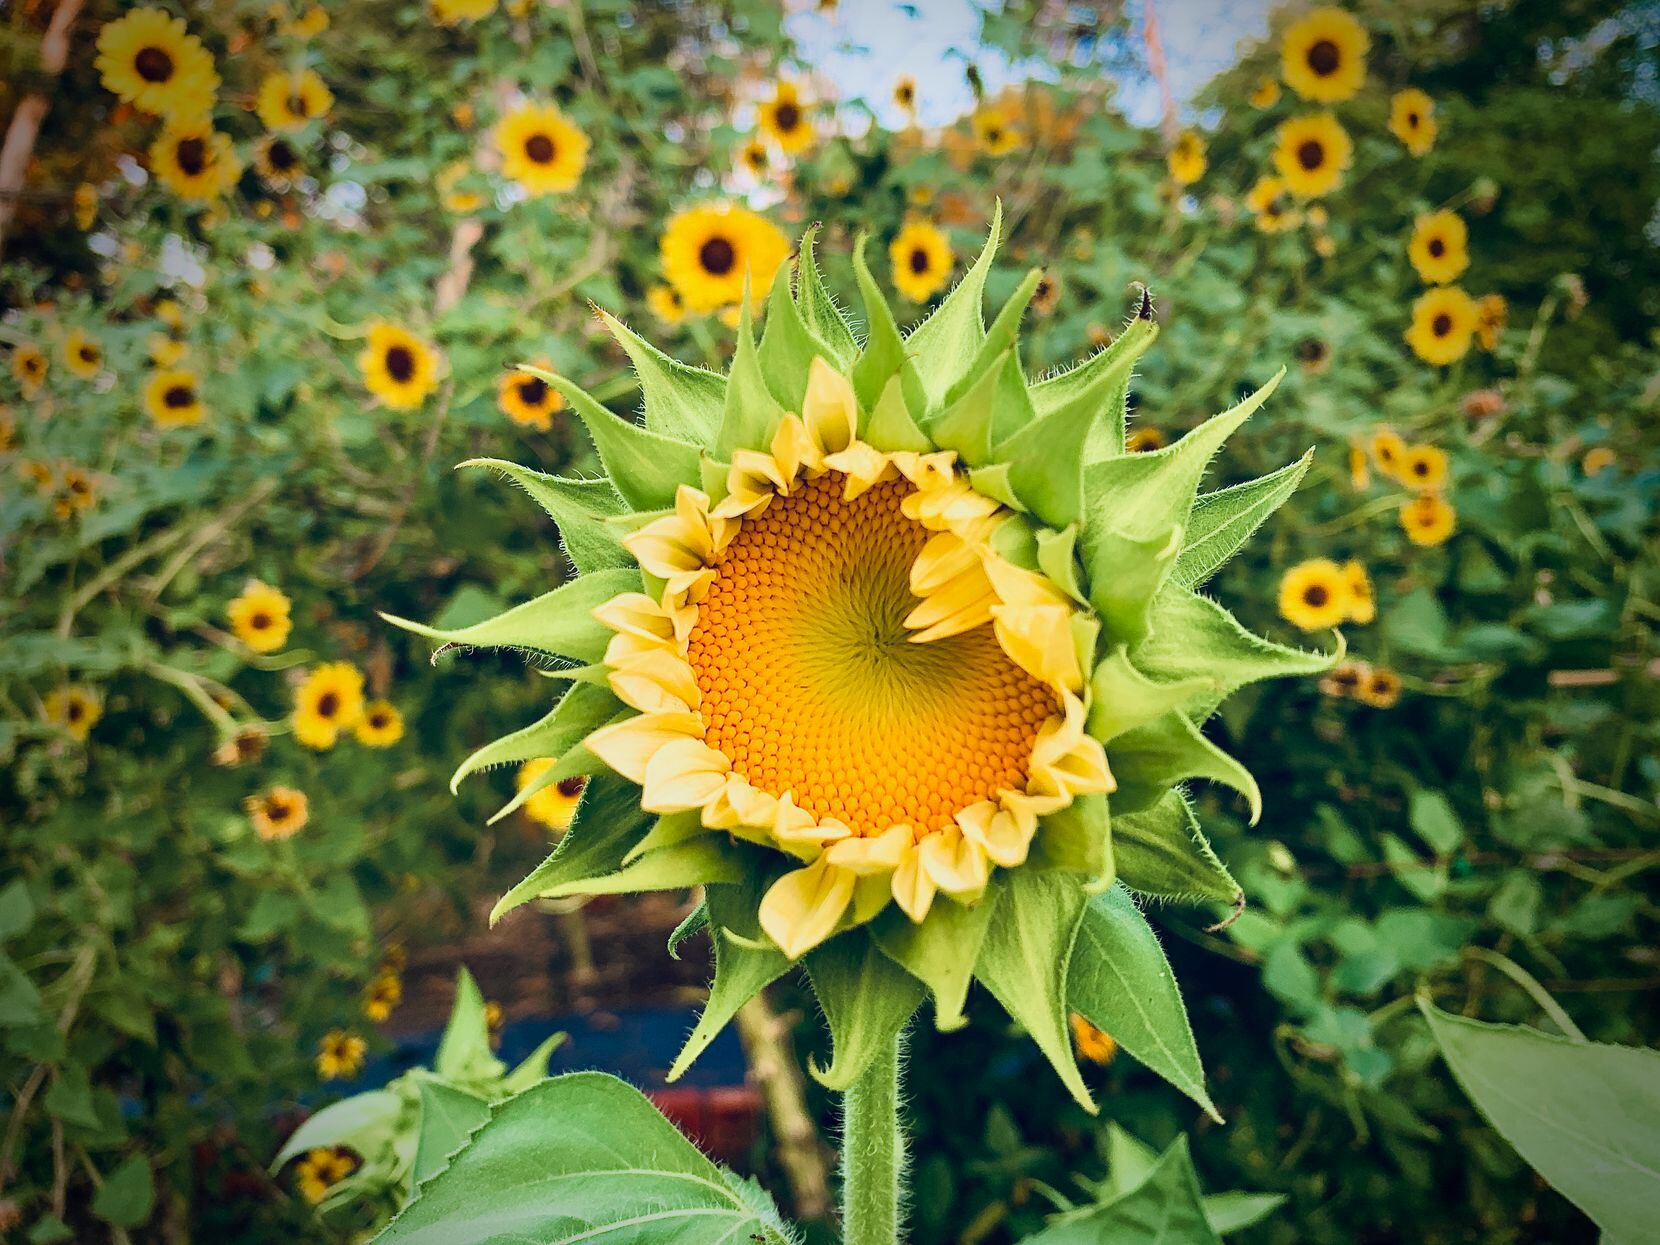 A sunflower opens up in a garden.